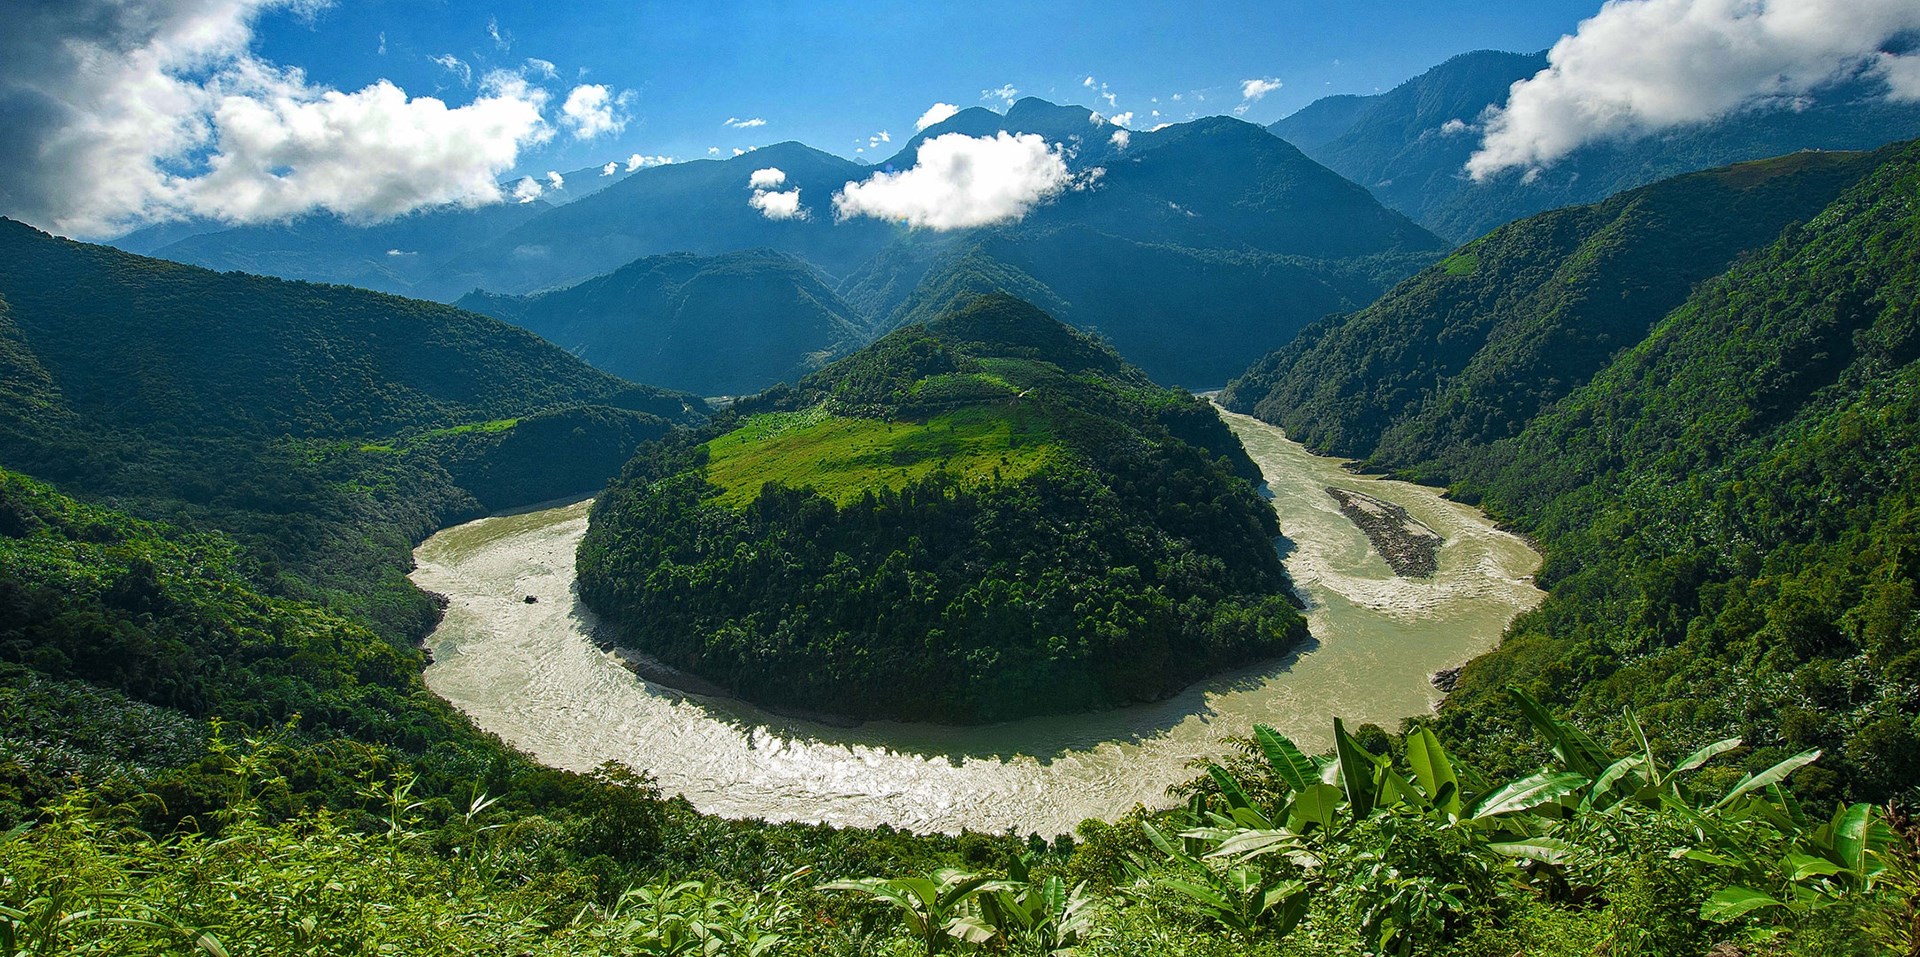 Nationales Naturschutzgebiet der Großen Schlucht des Yarlung Tsangpo